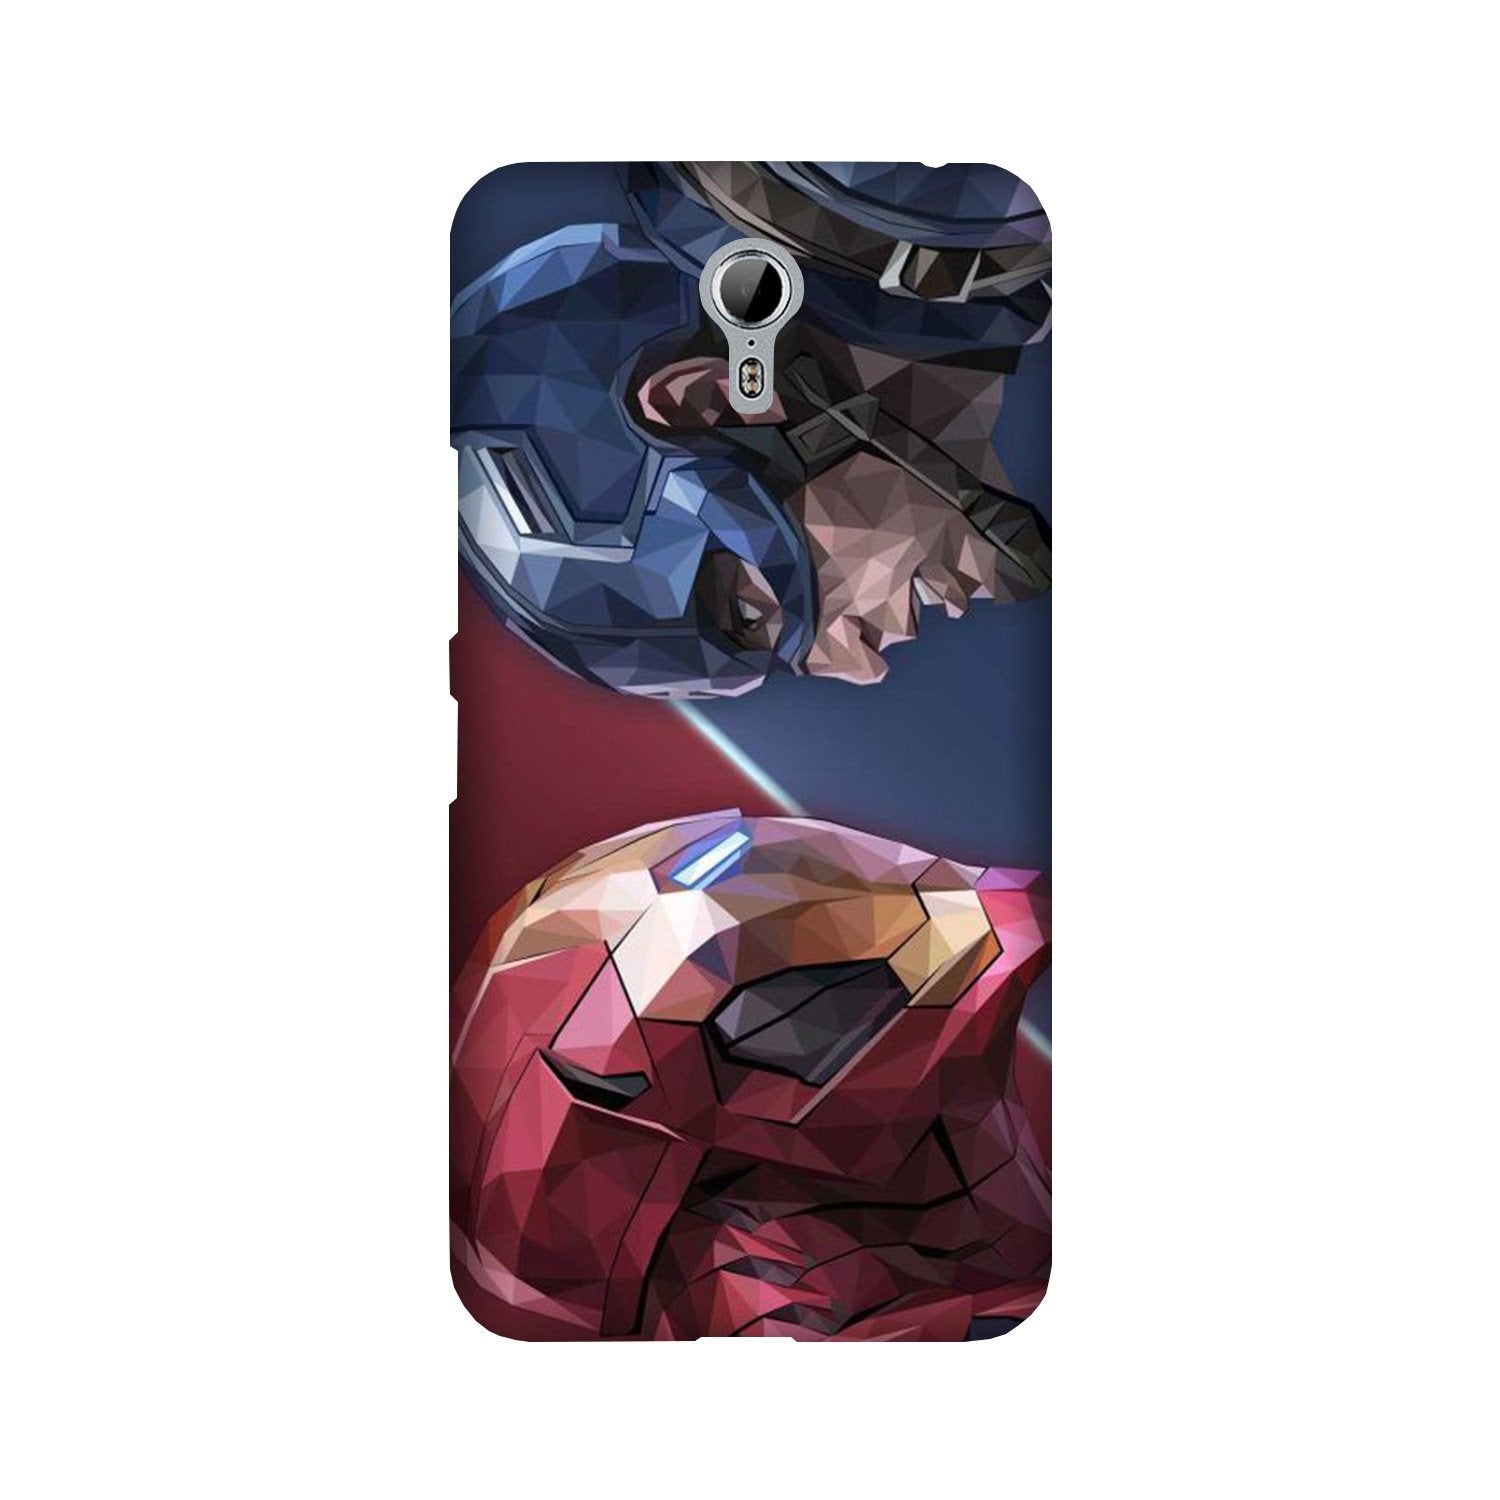 Ironman Captain America Case for Lenovo Zuk Z1 (Design No. 245)